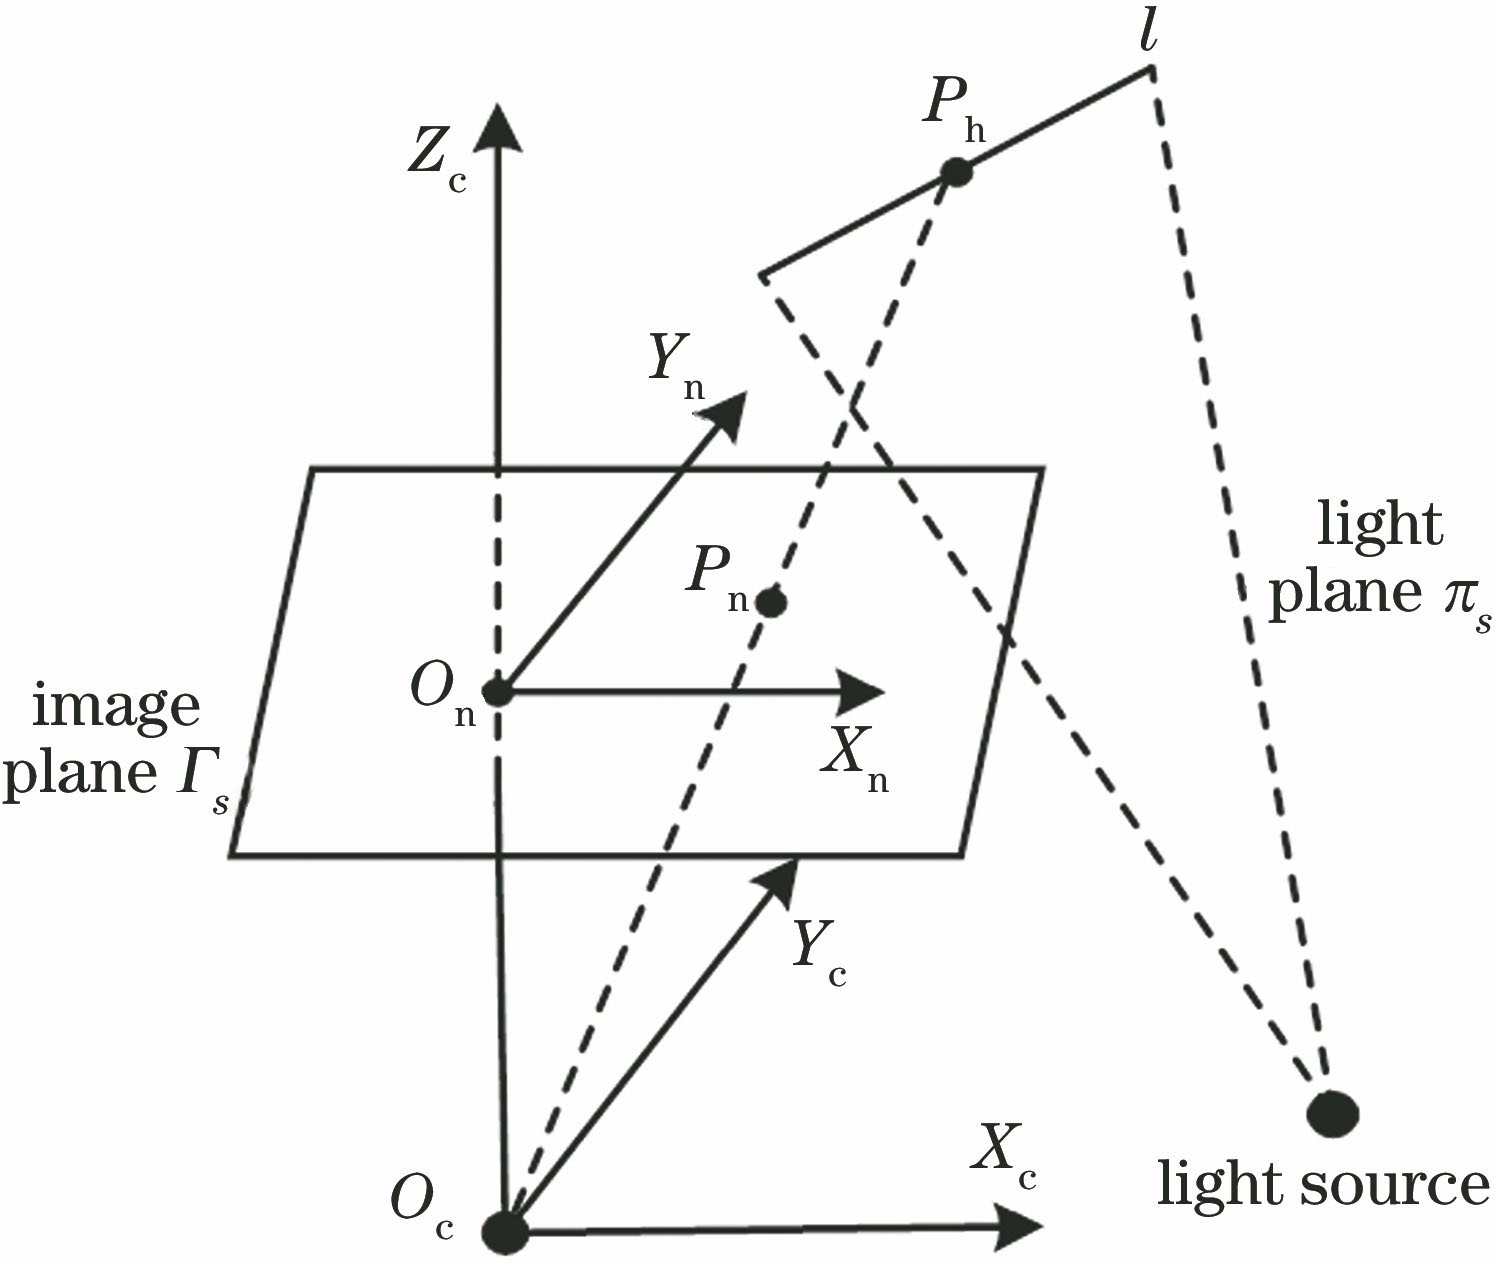 Line structured light sensor measurement model